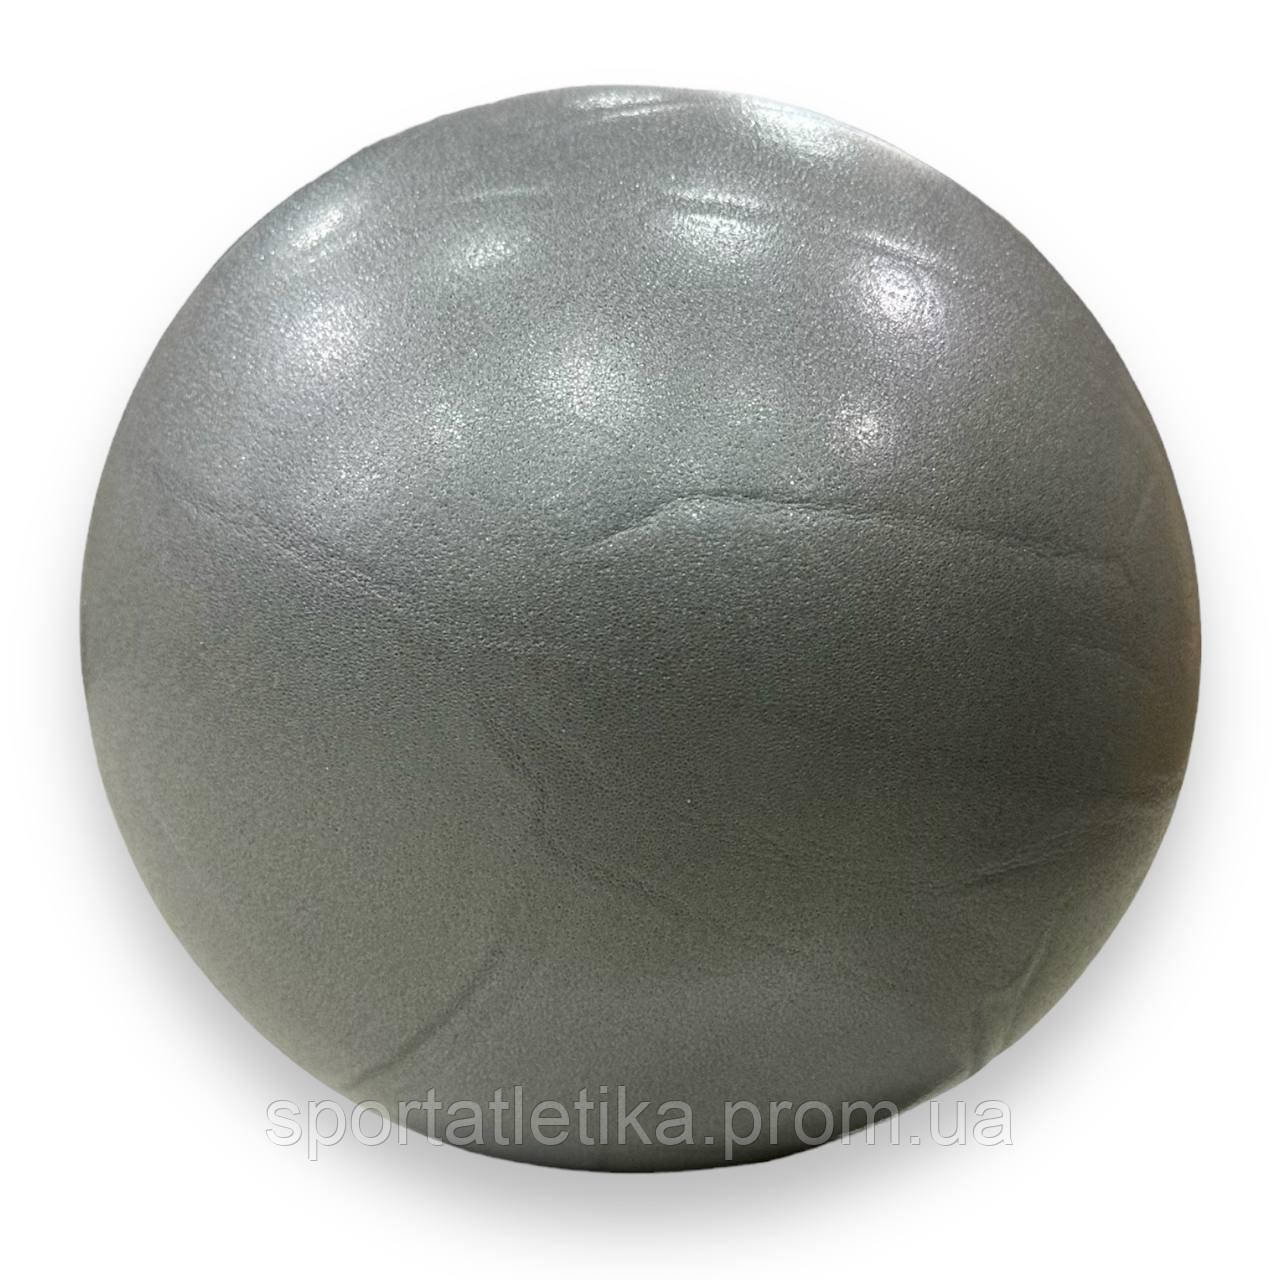 М'яч для пілатесу та йоги Pilates ball Mini 25 см Сірий